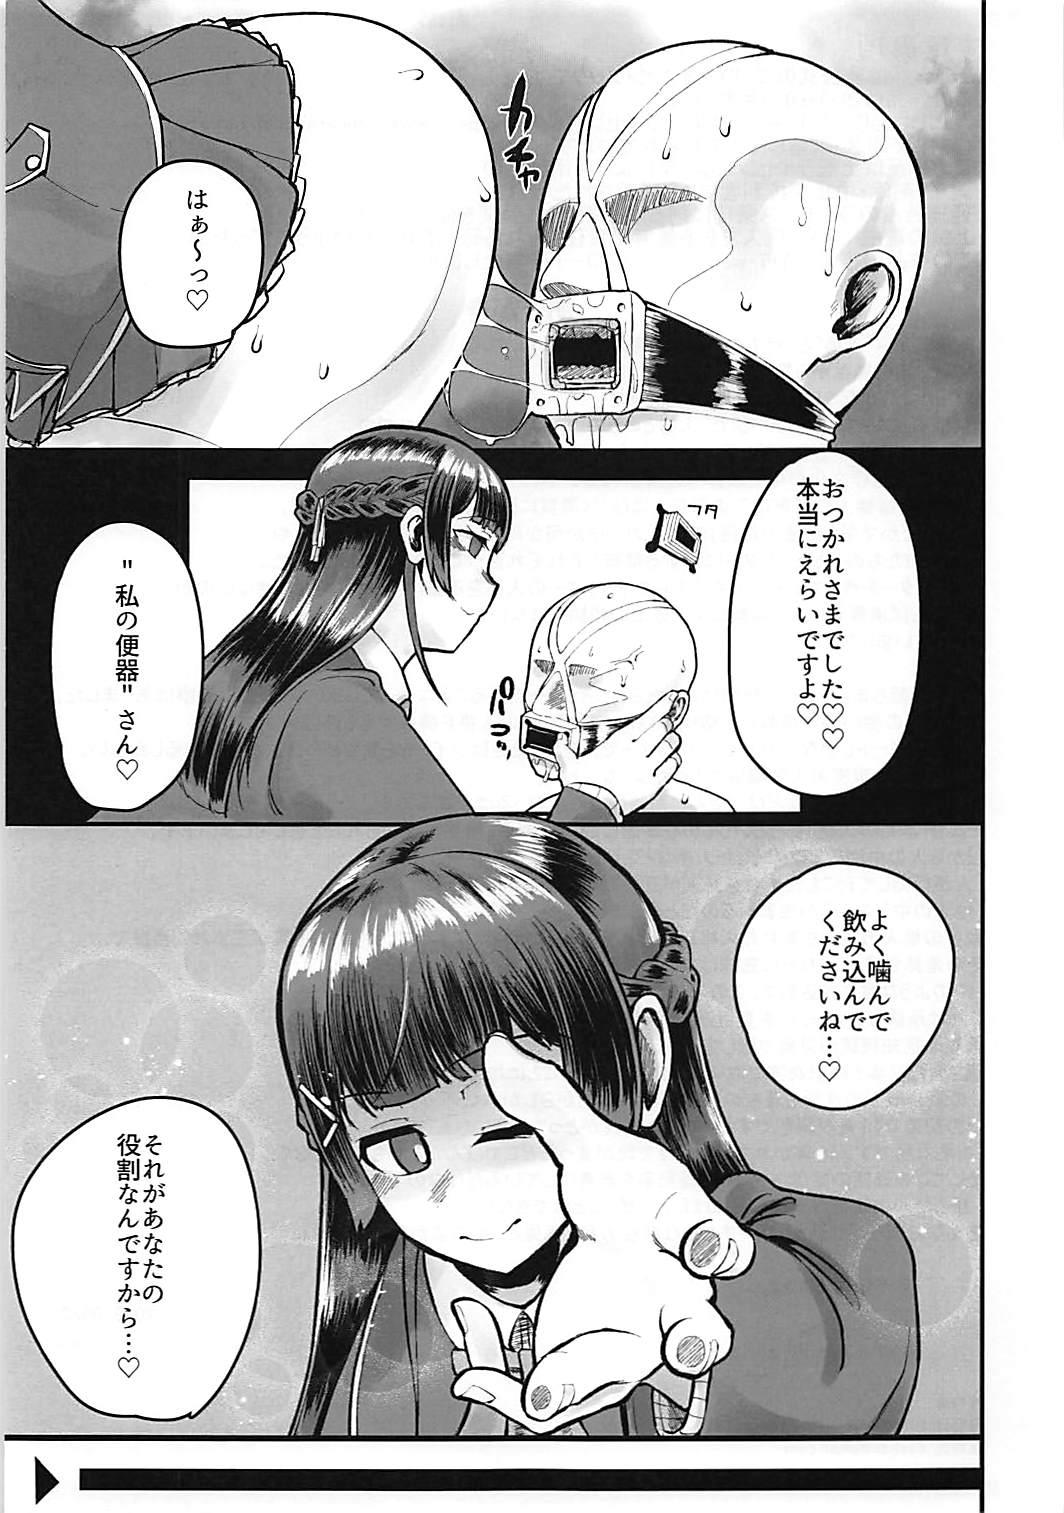 Morrita Tsuki ga Kirei desu ne. 18 Year Old - Page 24